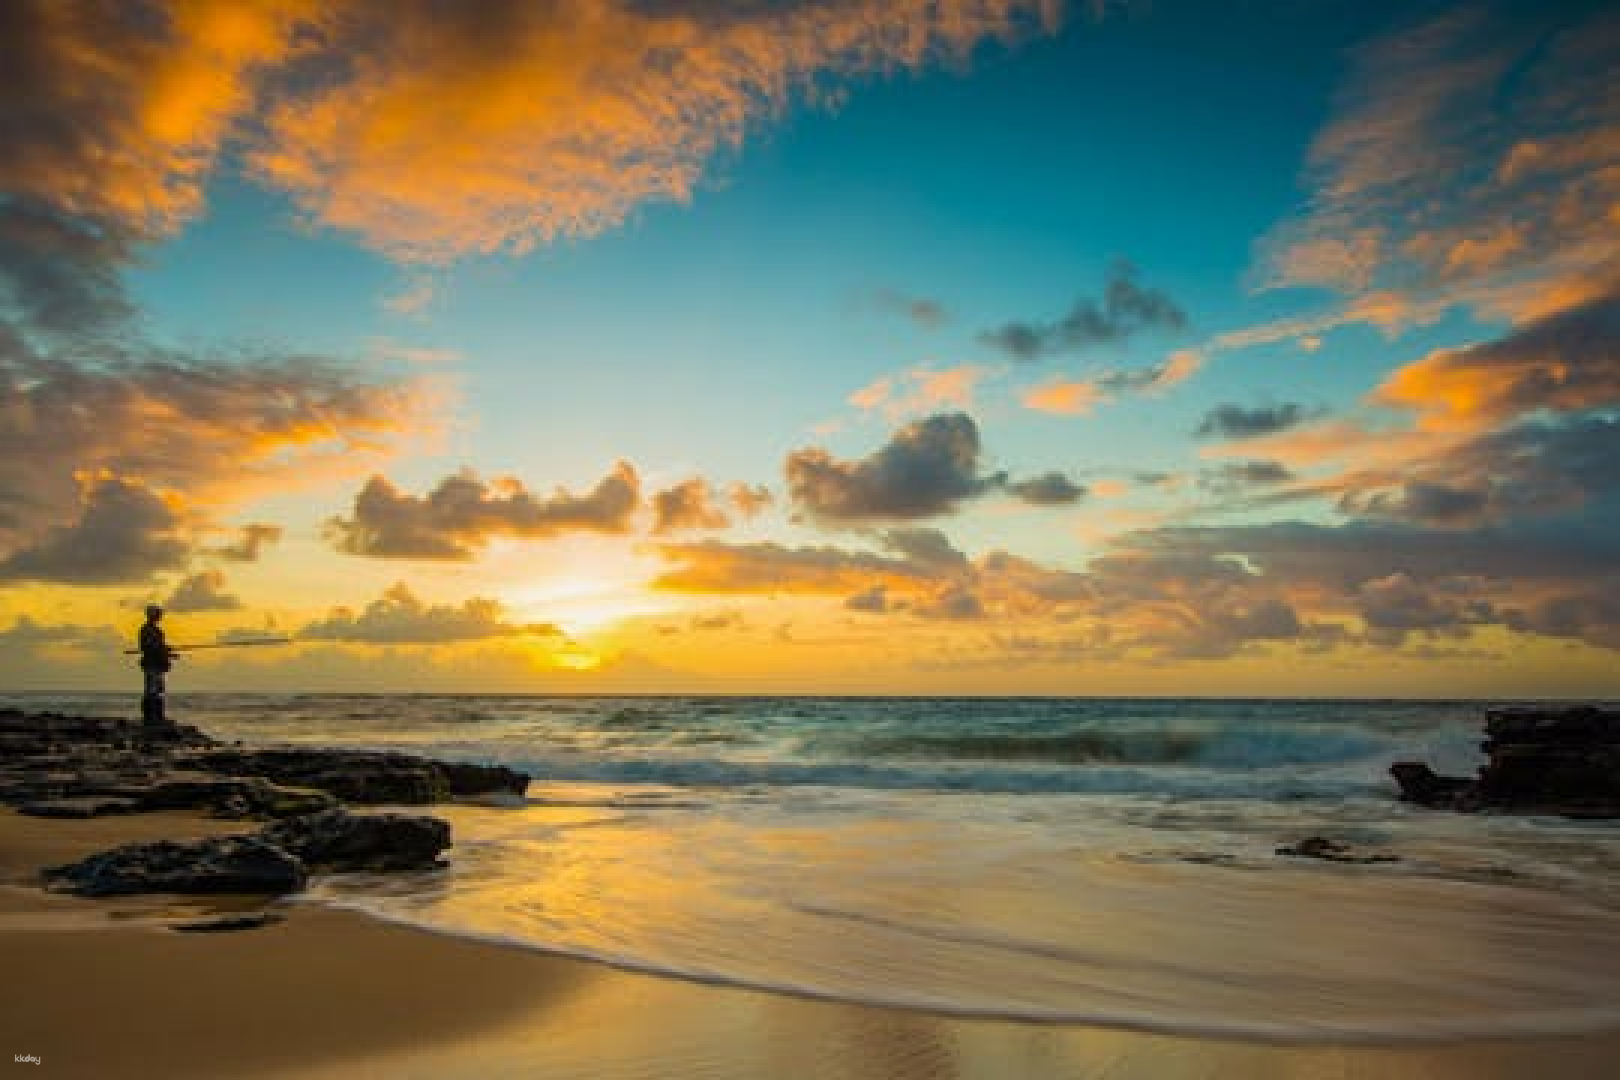 美國-夏威夷歐胡島| 環島日出攝影之旅| 威基基出發